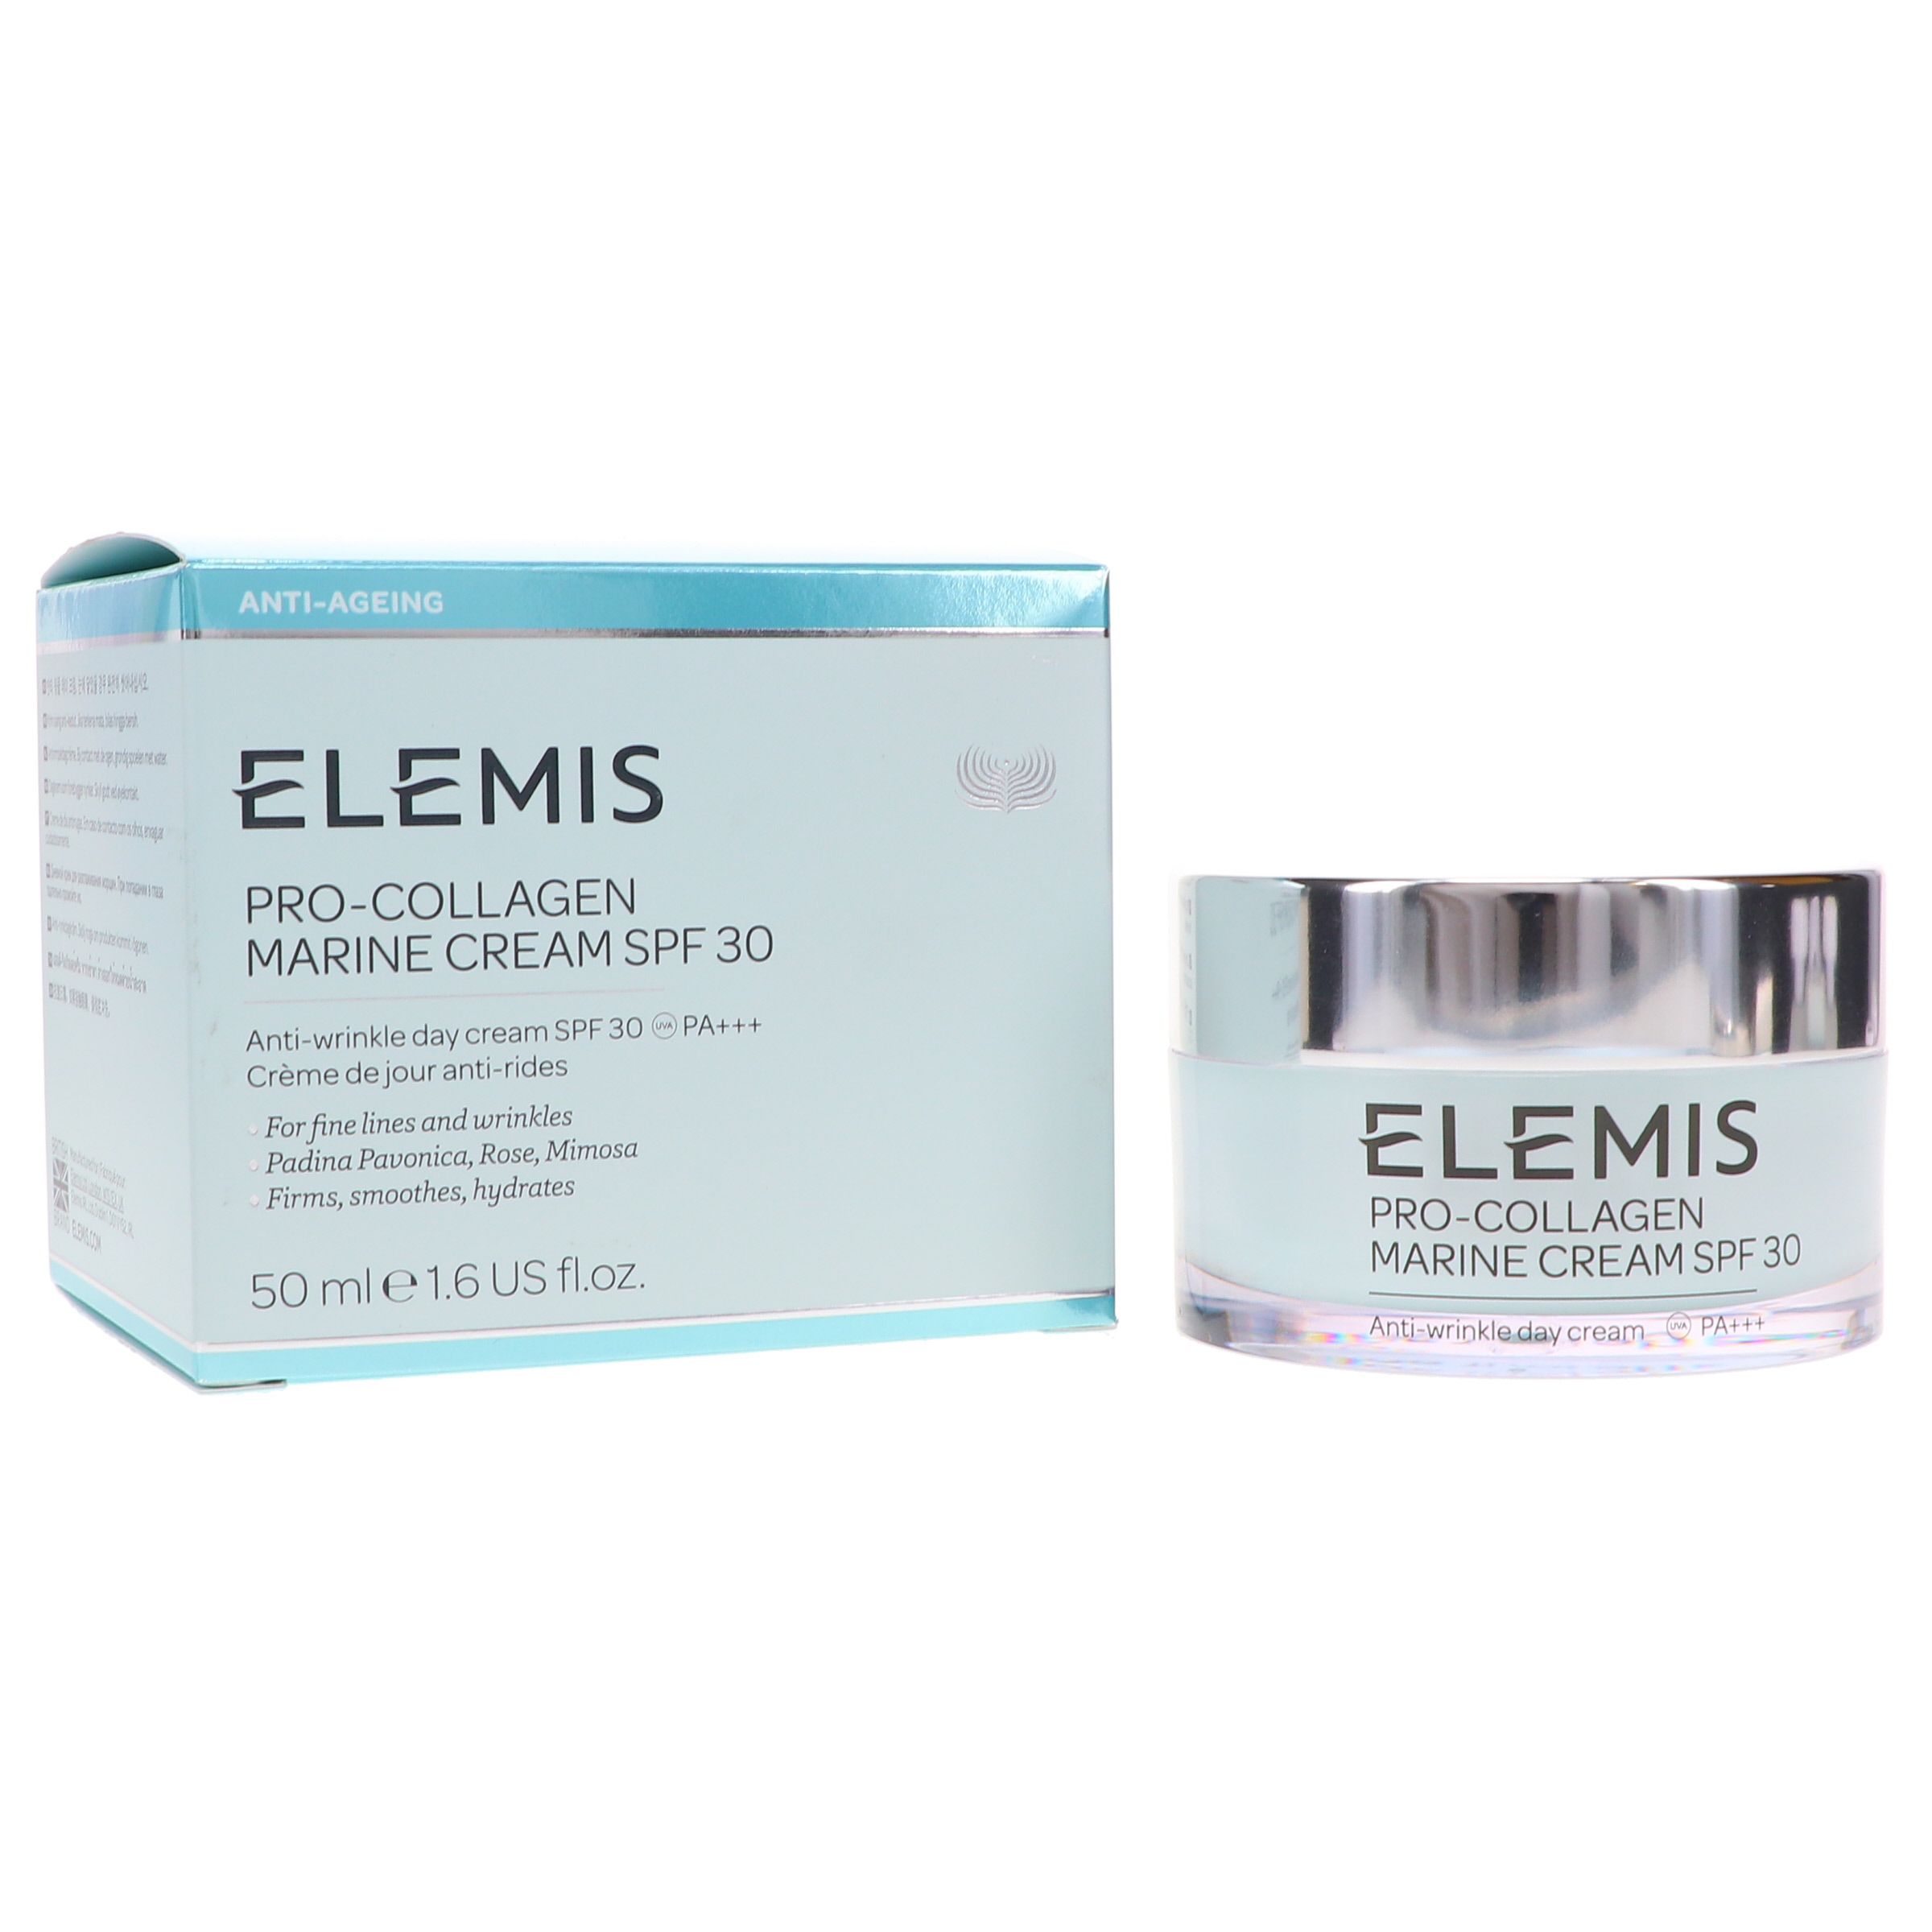 Elemis Pro-Collagen Marine Face Cream, SPF 30, 1.6 fl oz - image 3 of 3